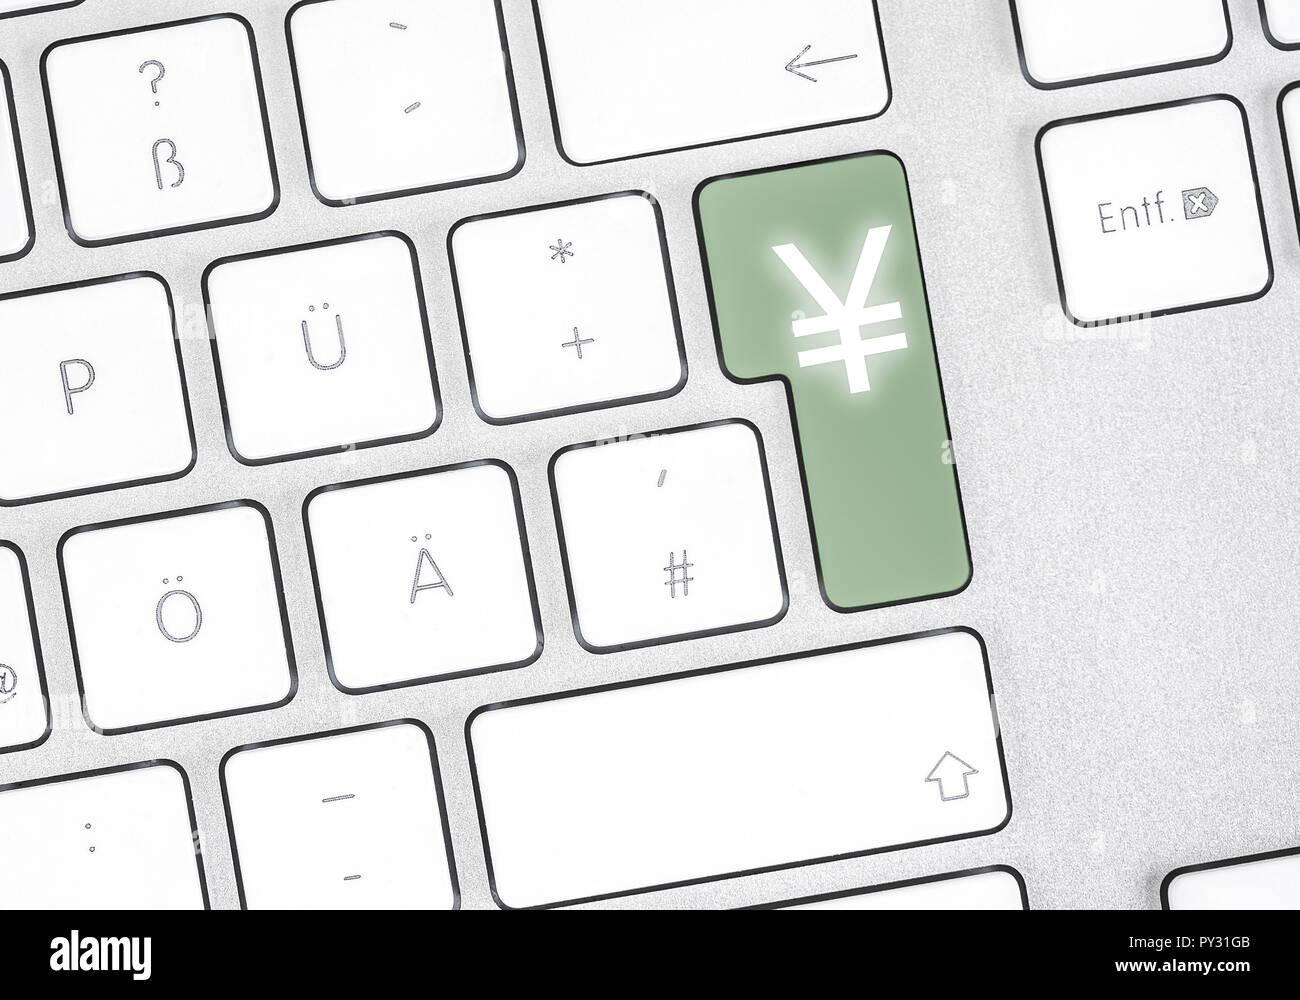 Farbiges Yen-Symbol auf PC-Tastatur Stock Photo